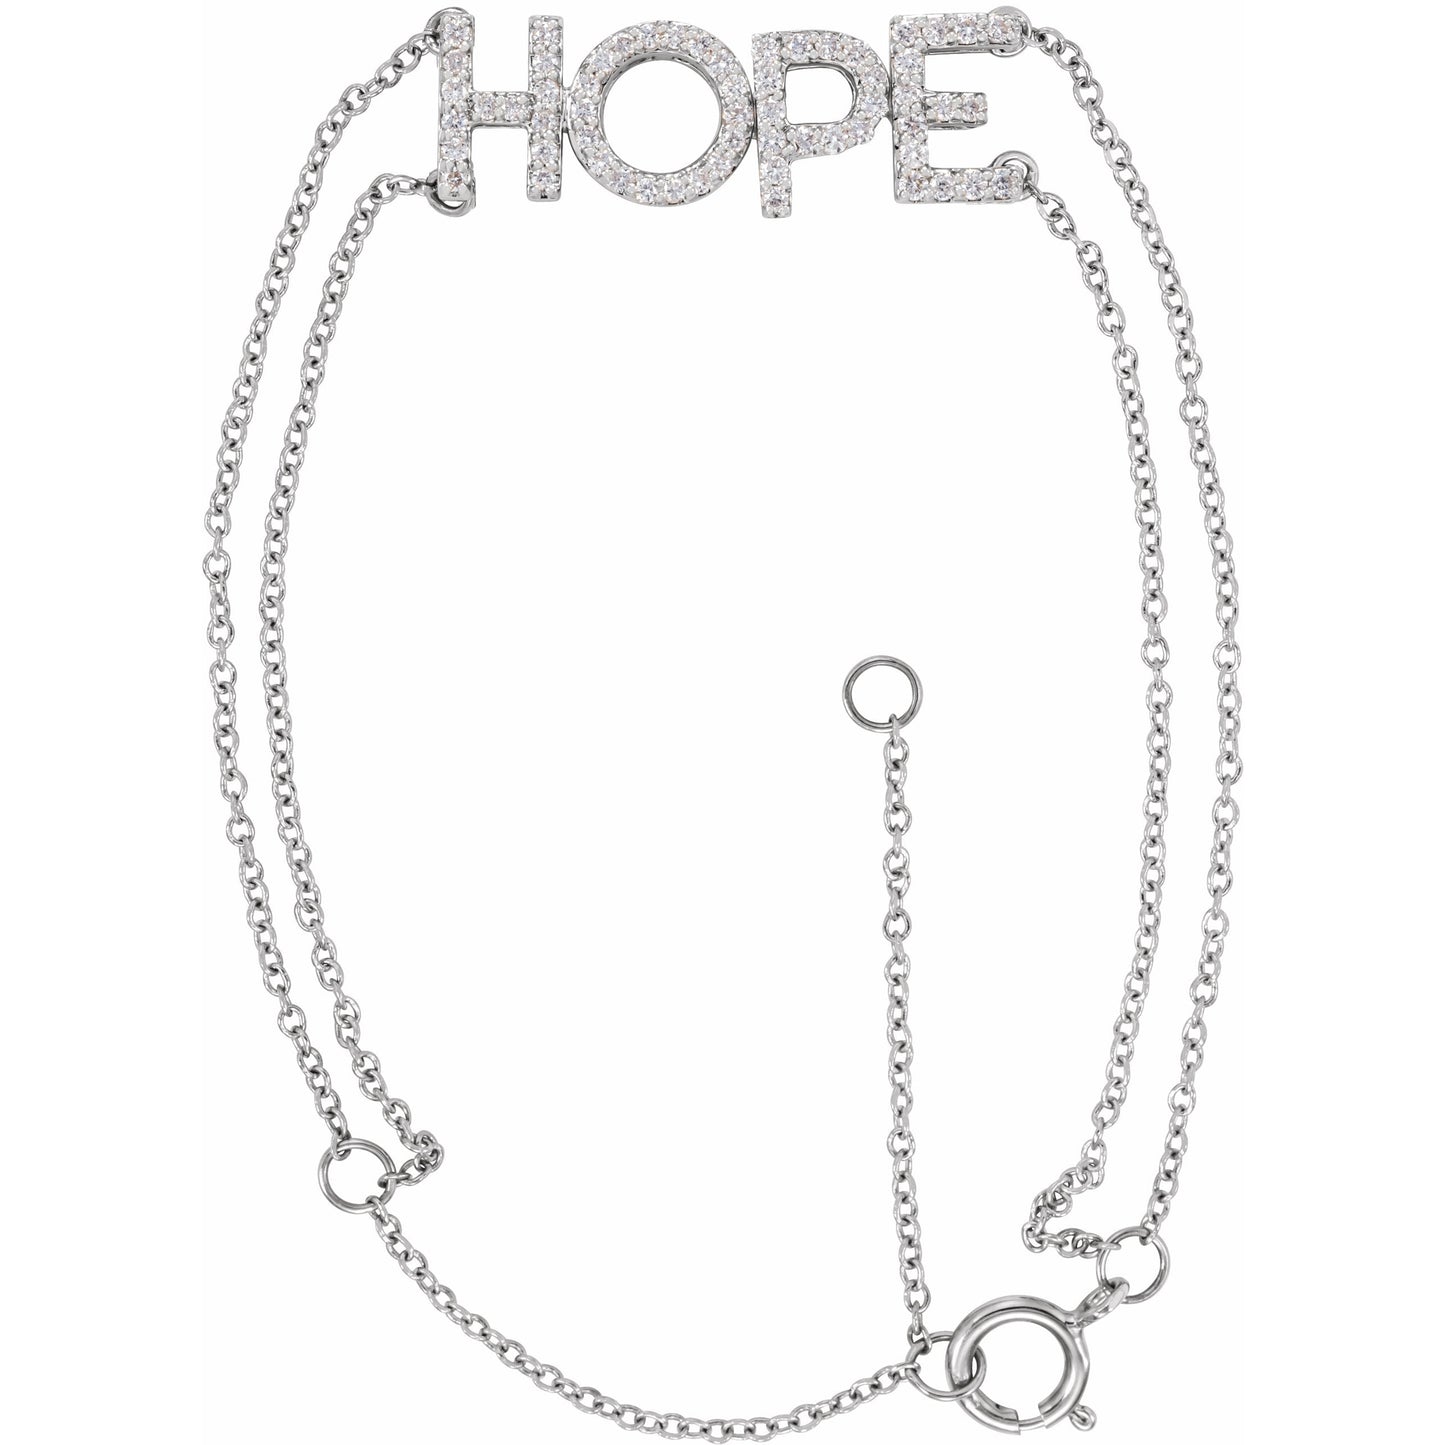 14K White 1/4 CTW Diamond Hope 5-7 Bracelet